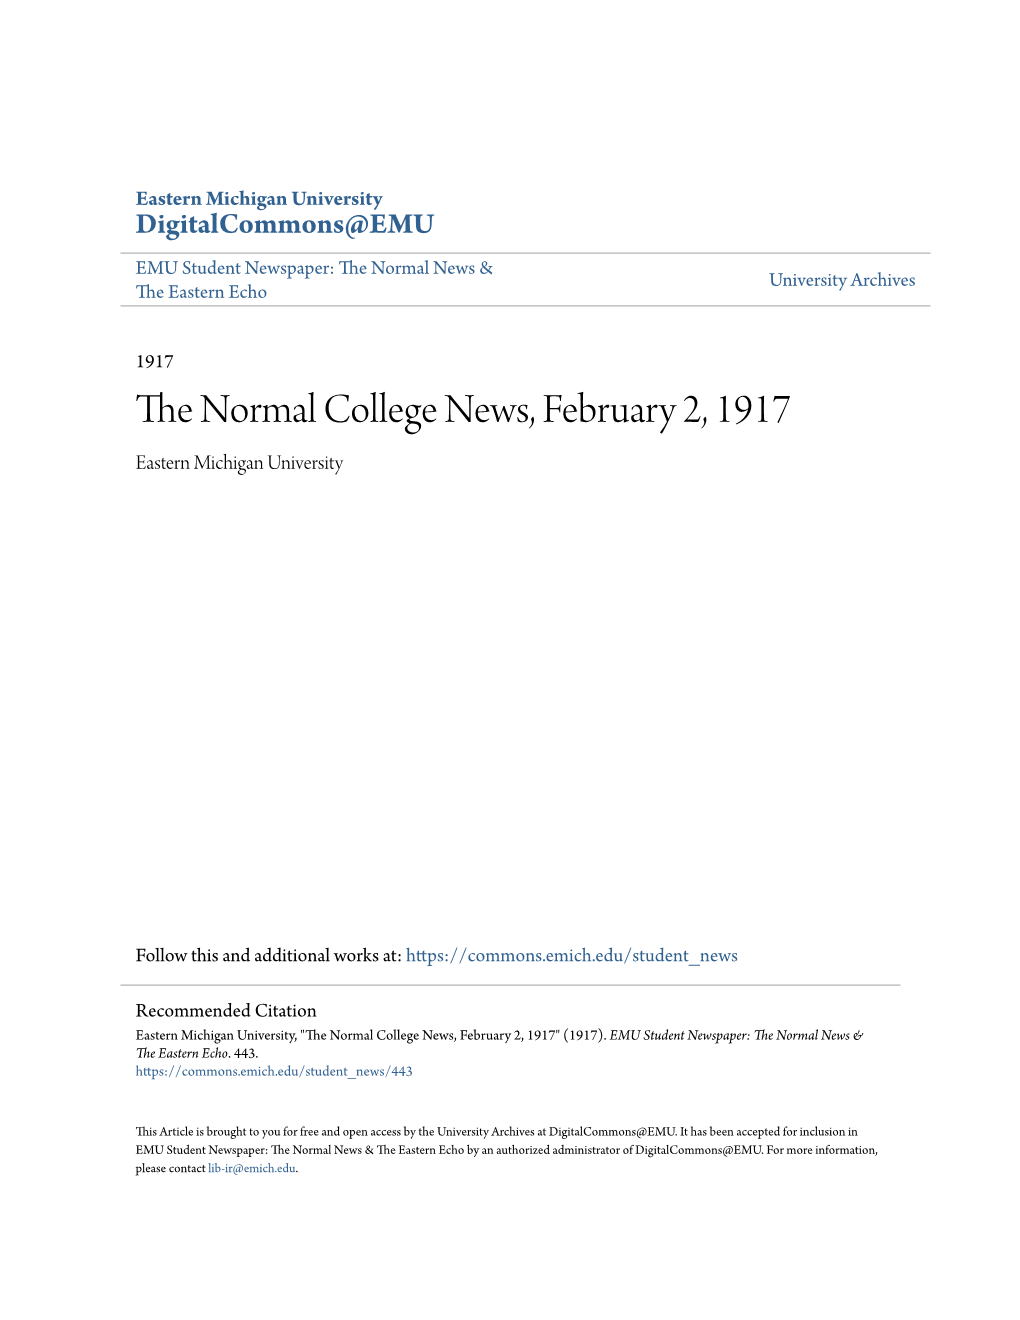 The. Nor01al College New" S